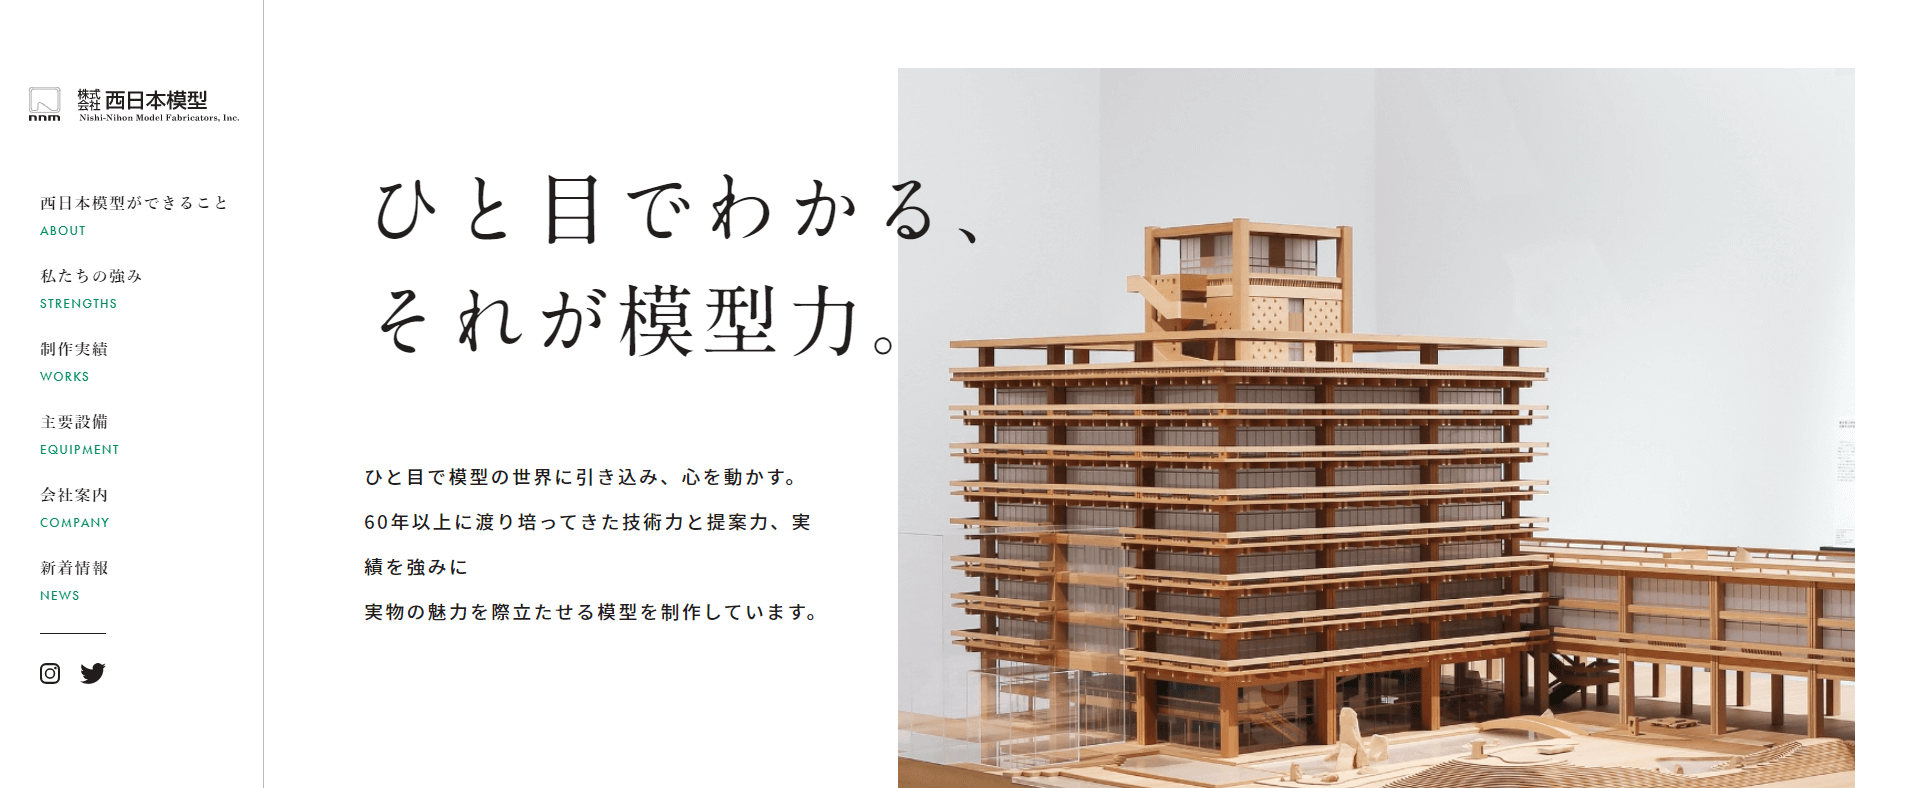 株式会社西日本模型の画像2